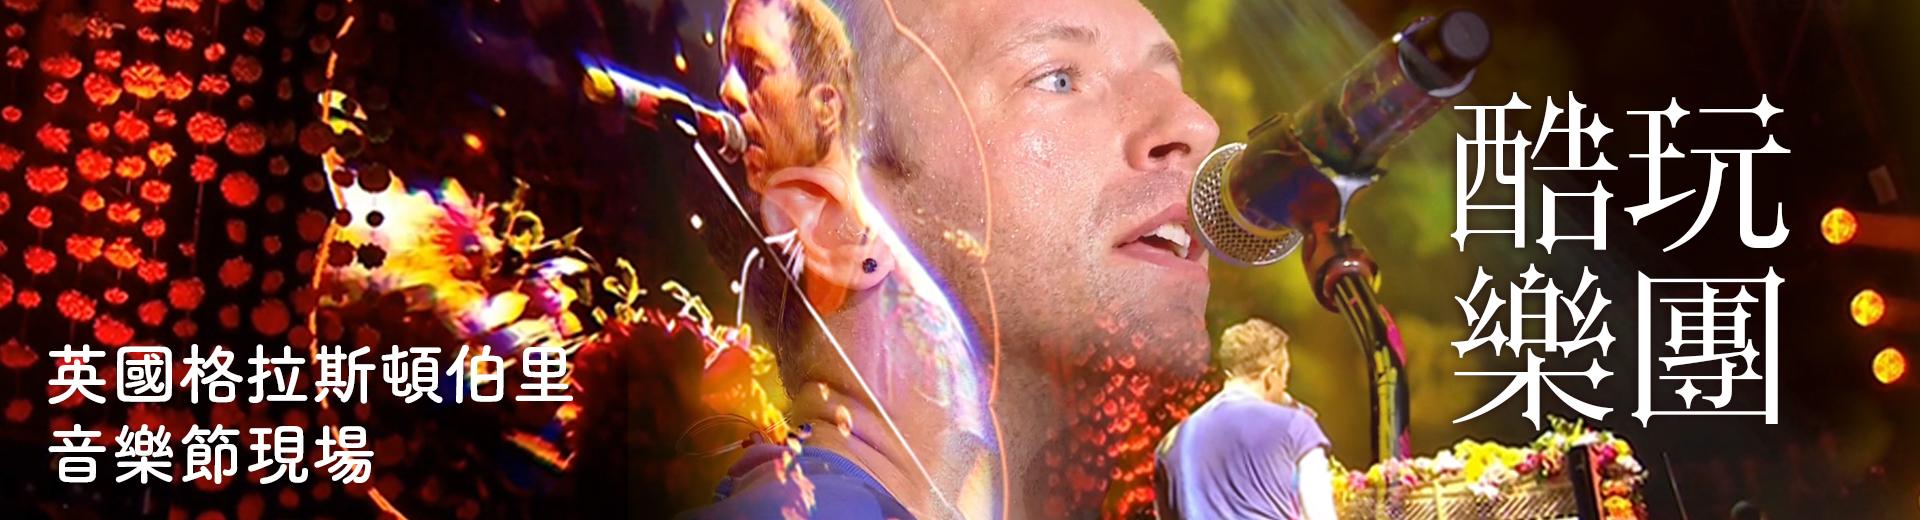 酷玩樂團—英國格拉斯頓伯里音樂節現場 Coldplay - Live at Glastonbury